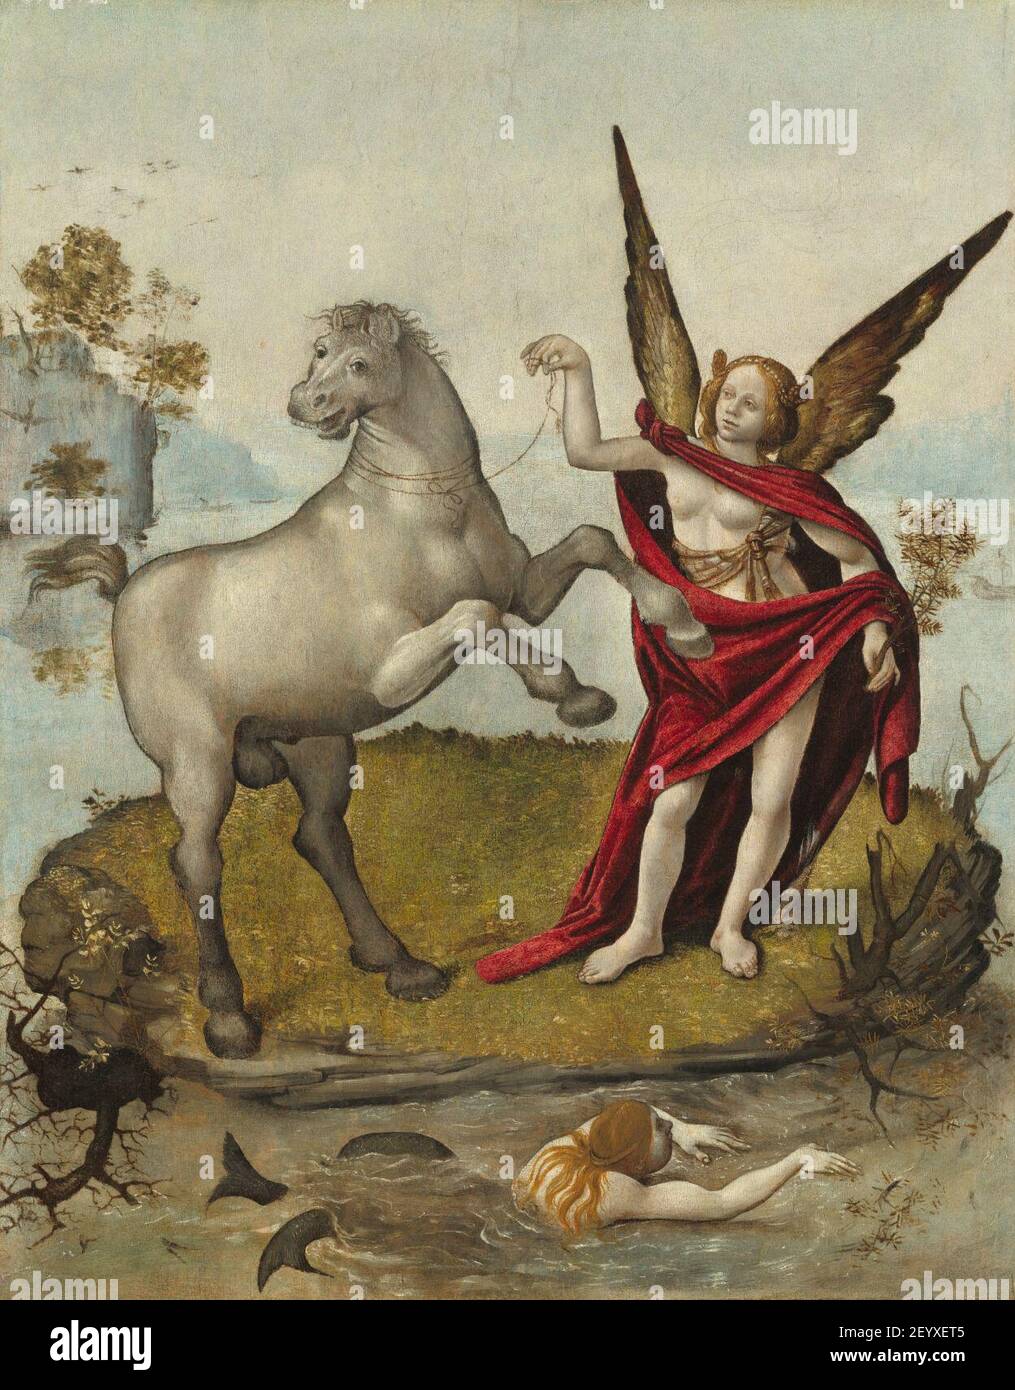 Piero di Cosimo - Allegory. Stock Photo